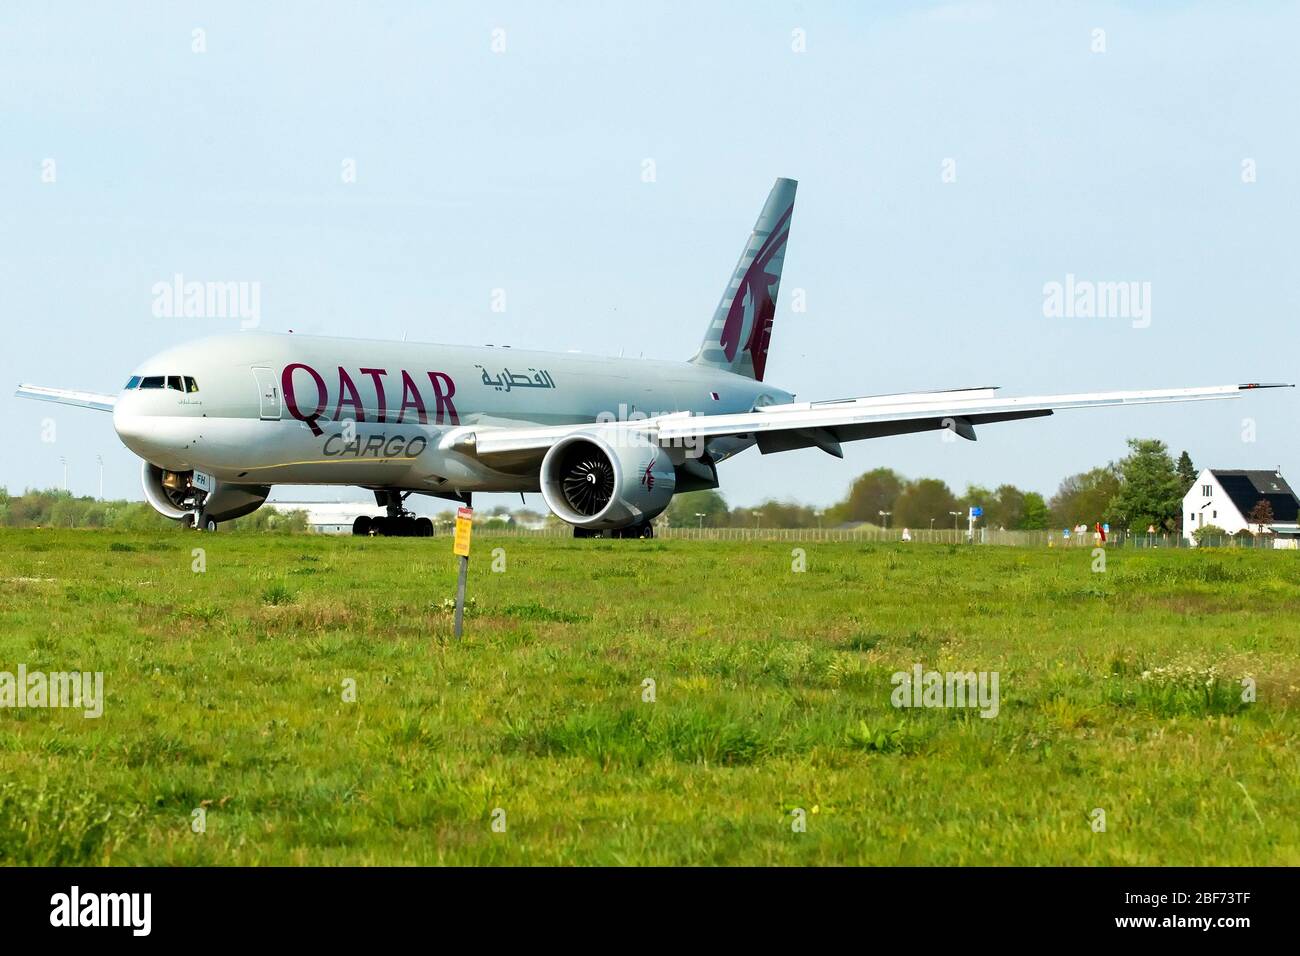 16 april 2020 Maastricht, Niederlande Flugzeuge verlassen den Flughafen Qatar Cargo vliegtuig A7-BFH Qatar Cargo plane A7-BFH Stockfoto